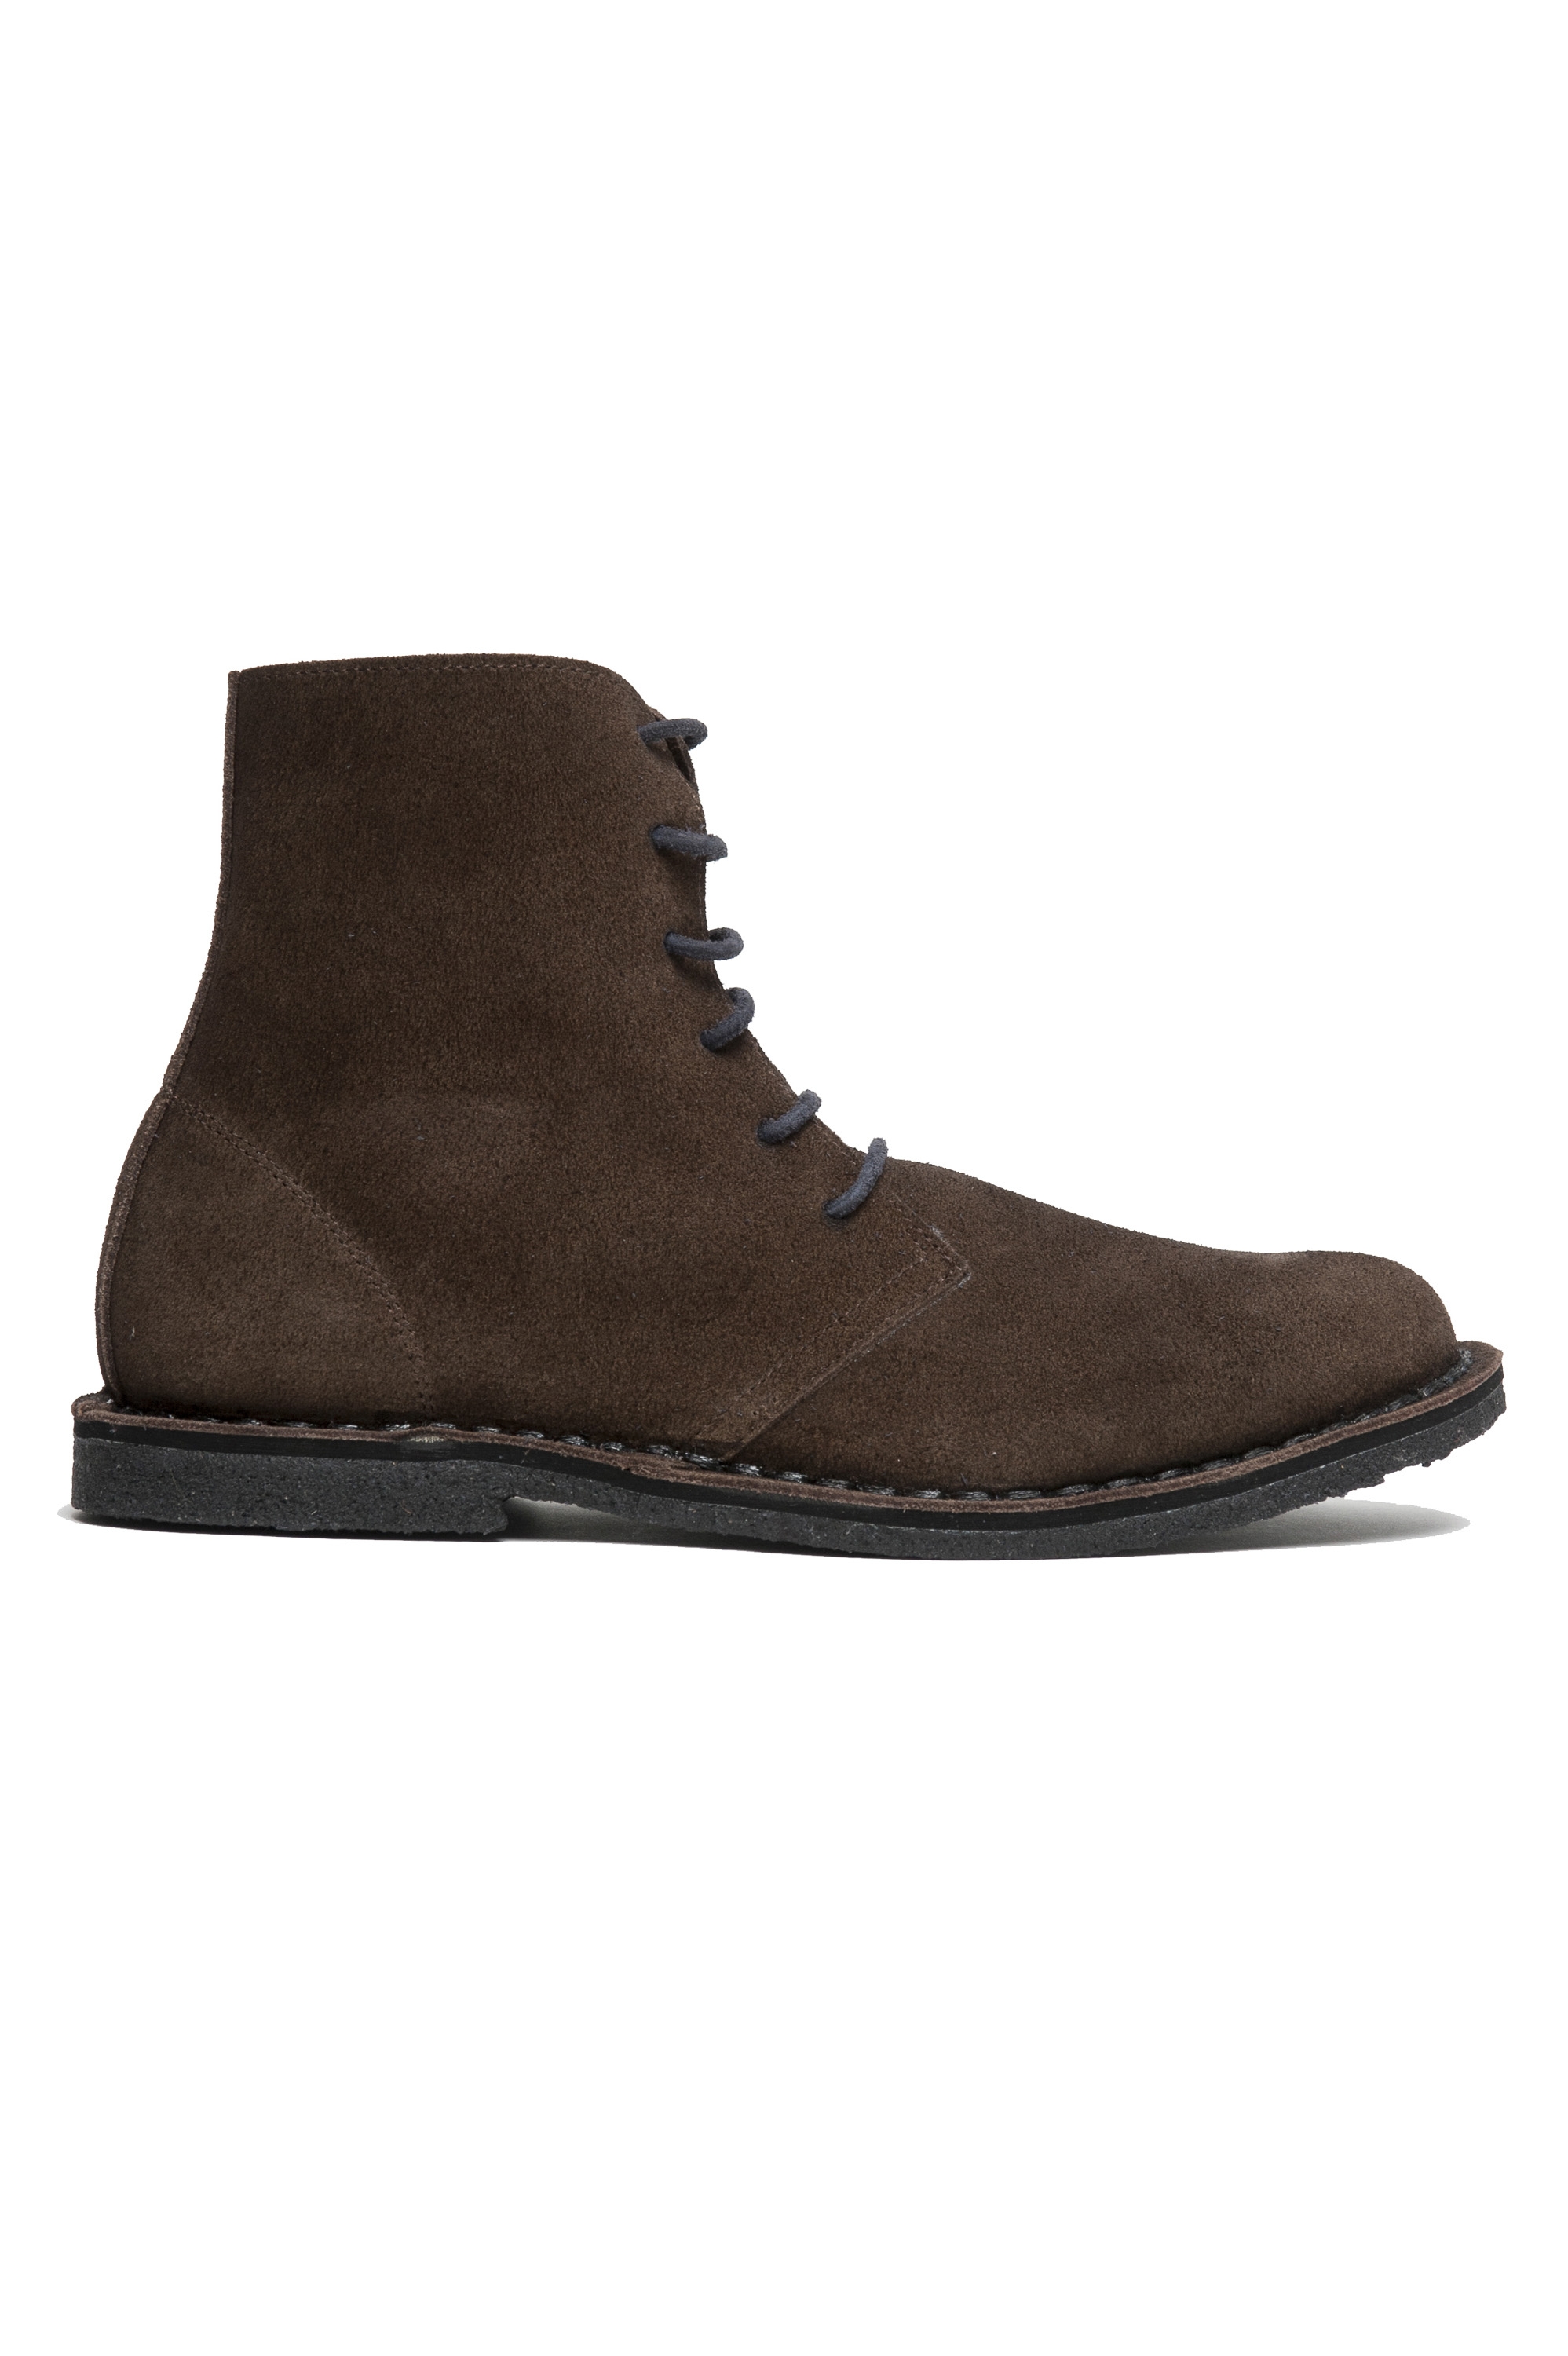 SBU 01912_19AW Desert boots classiche in pelle scamosciata marrone 01